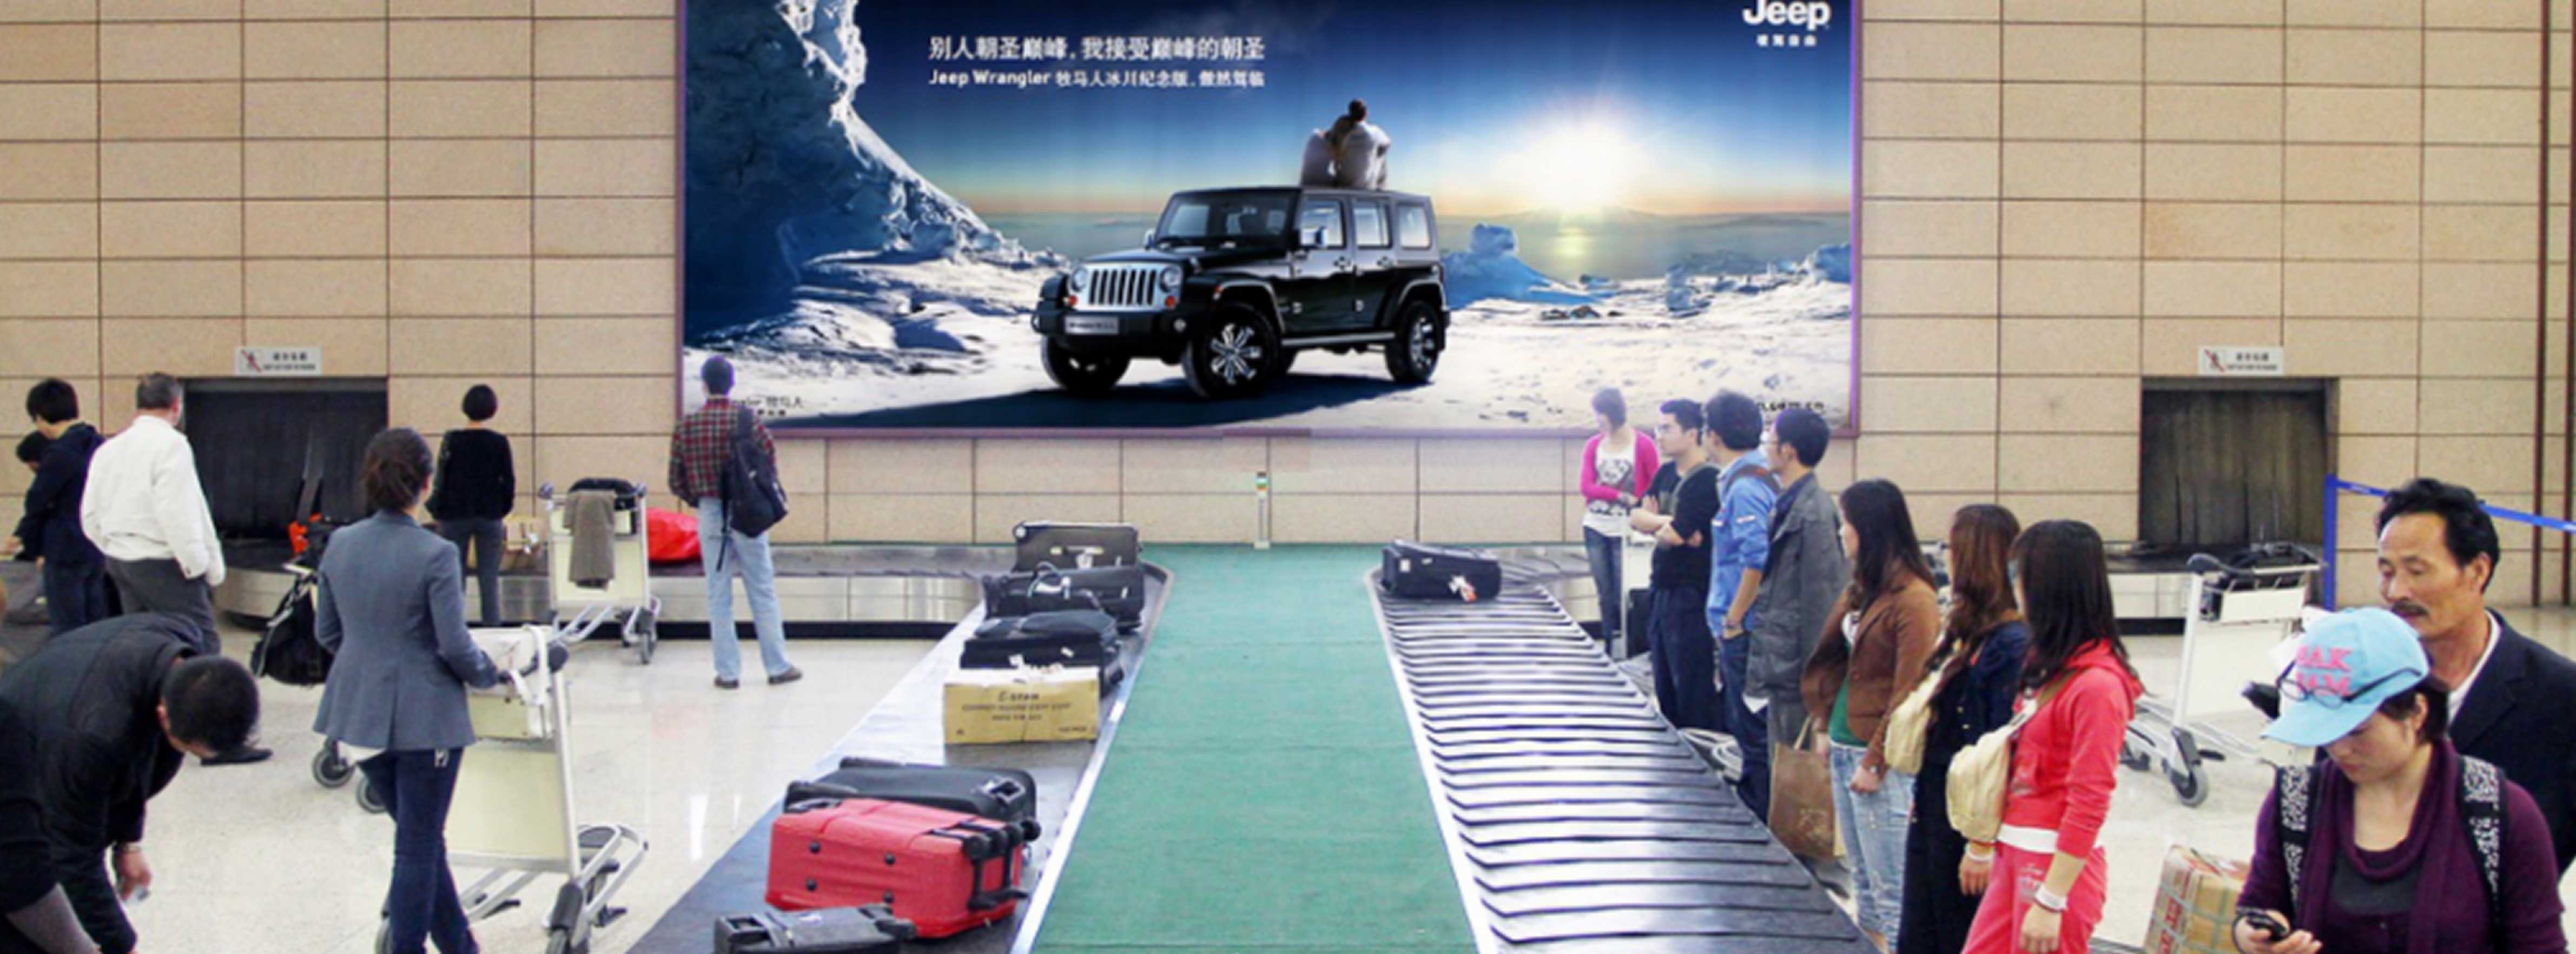 上海机场广告-浦东T1国内到达行李厅灯箱